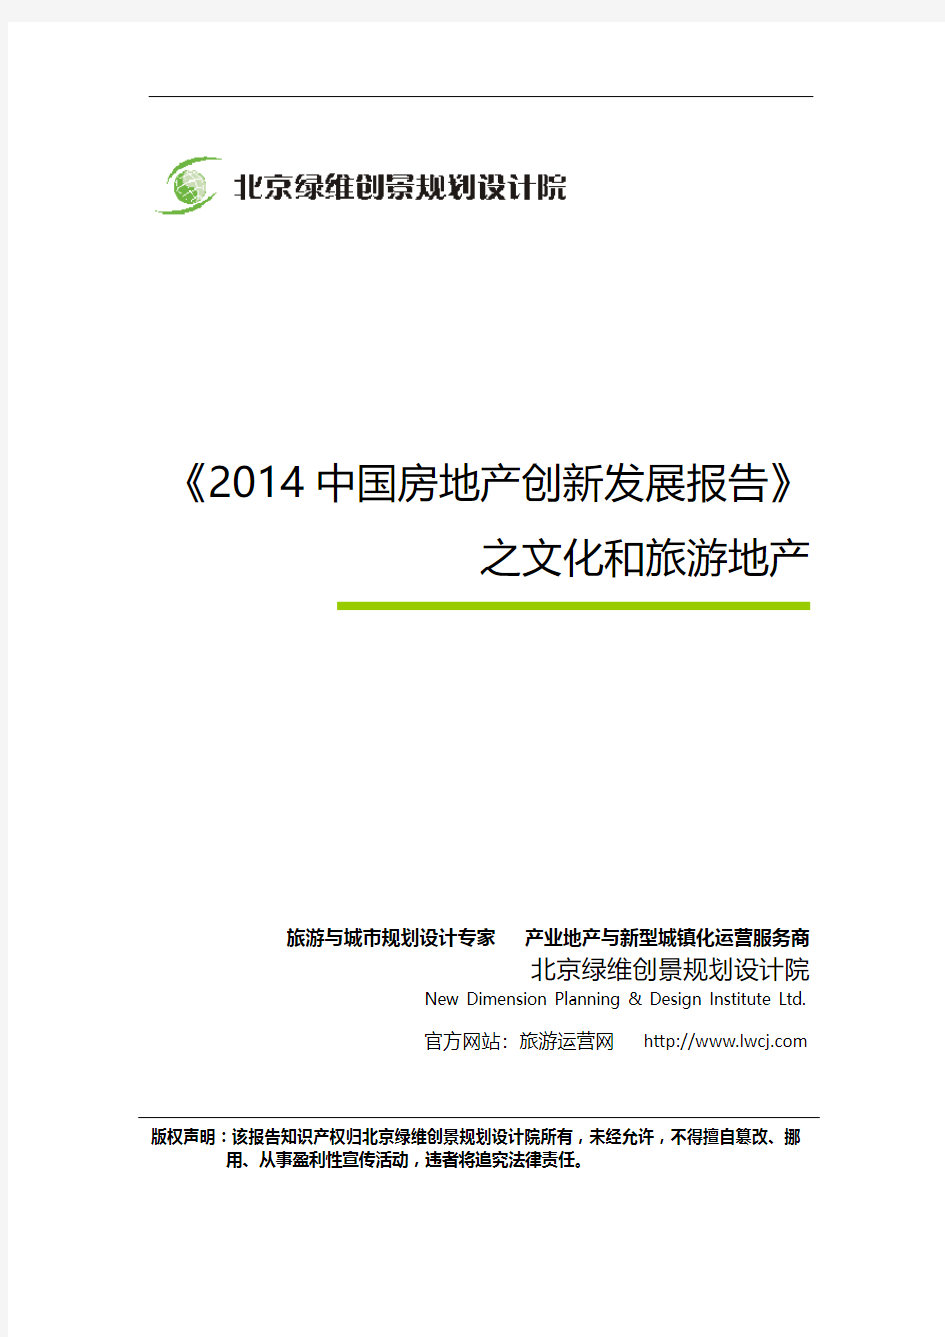 绿维创景：《2014中国房地产创新发展报告》之文化和旅游地产